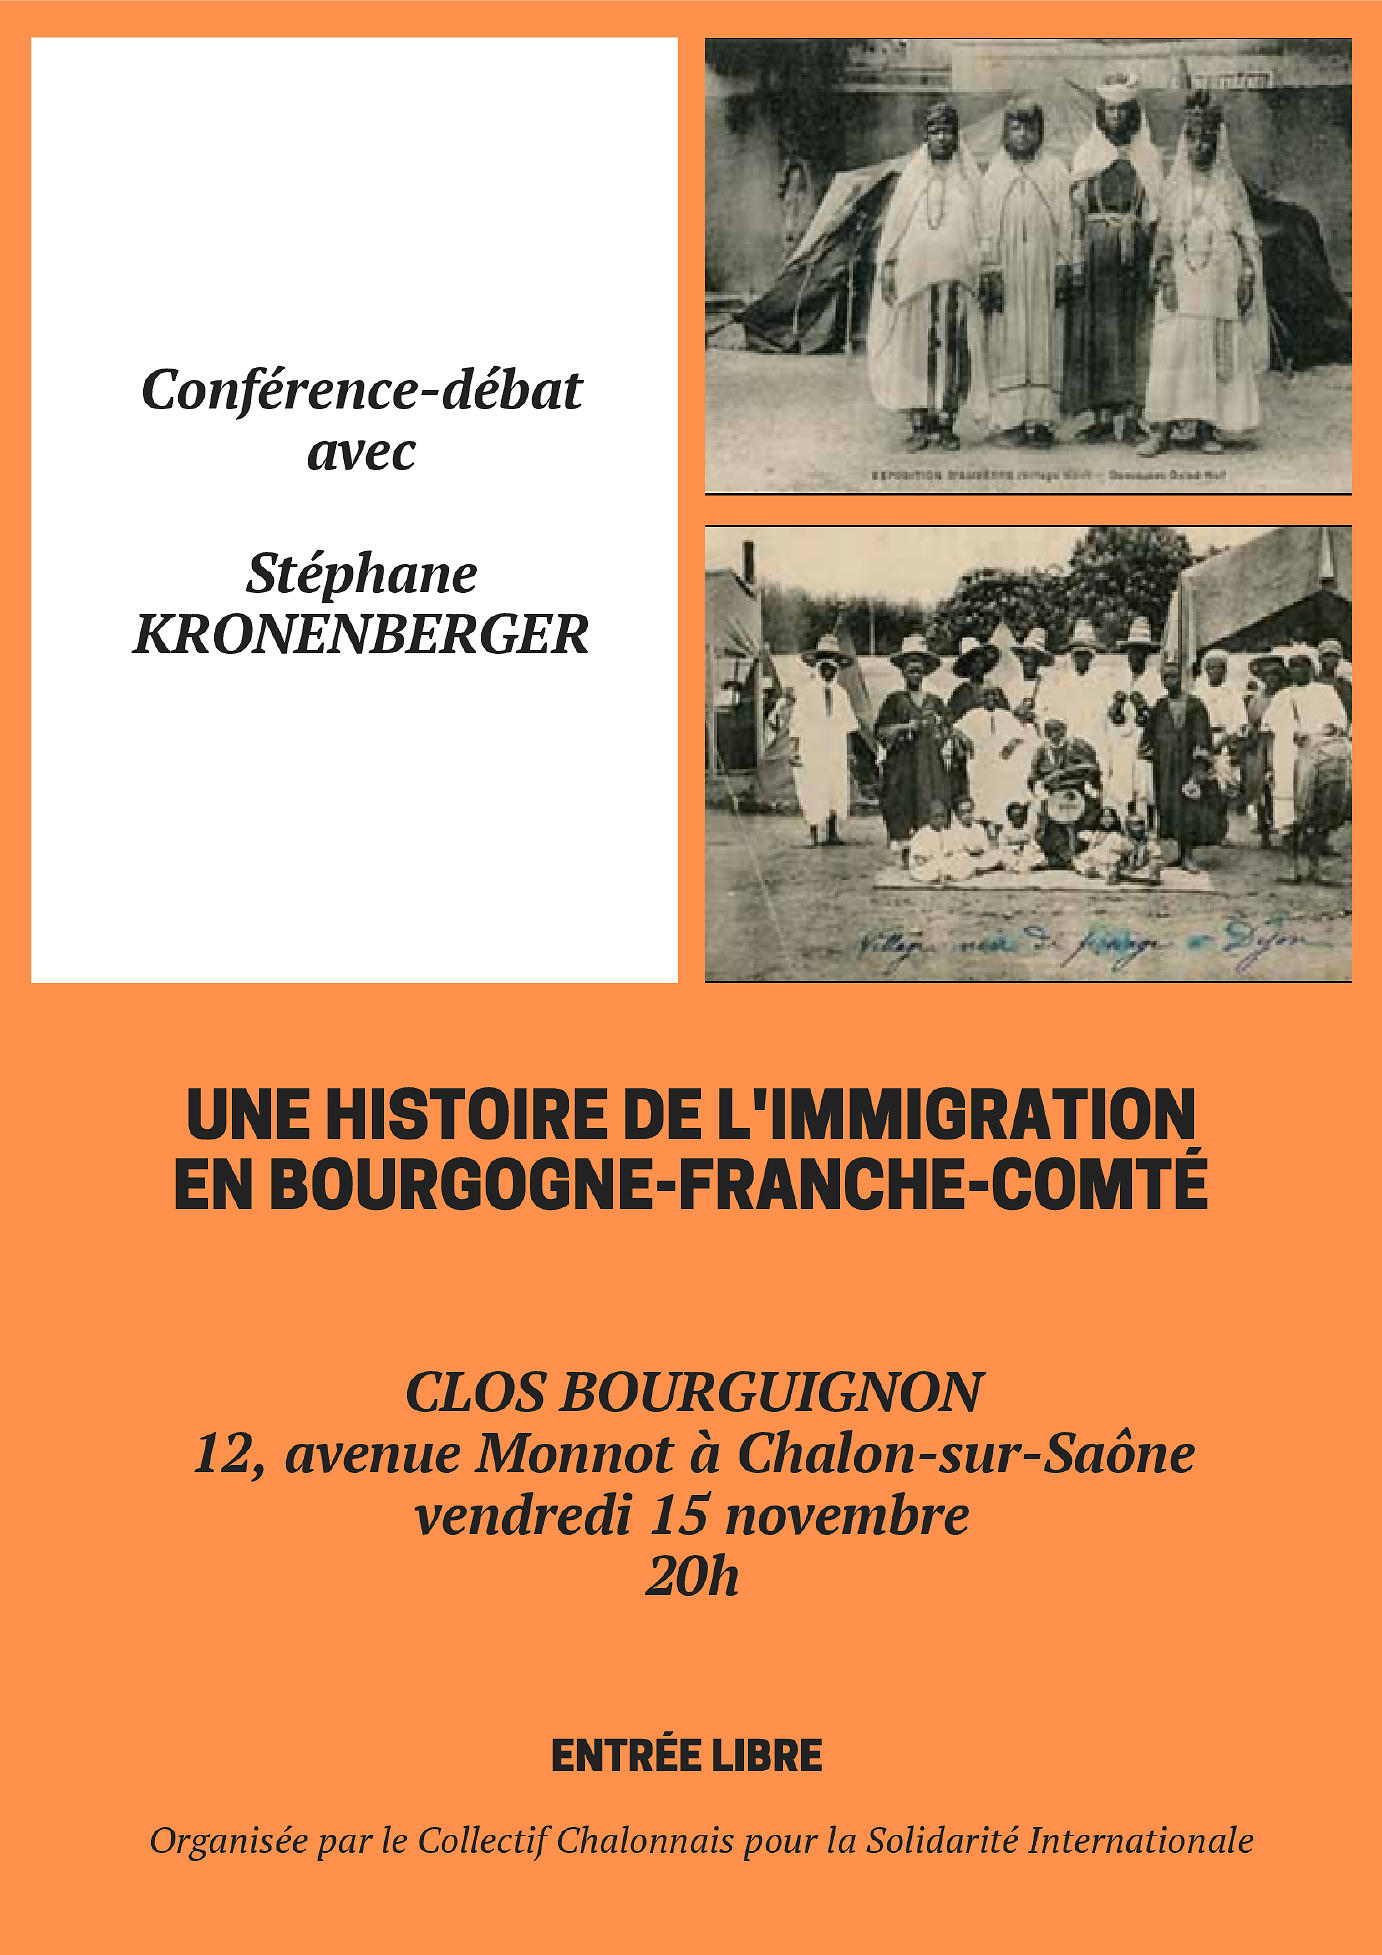 affiche Une histoire de l'immigration en Bourgogne-Franche-Comté avec l'historien Stéphane Kronenberger